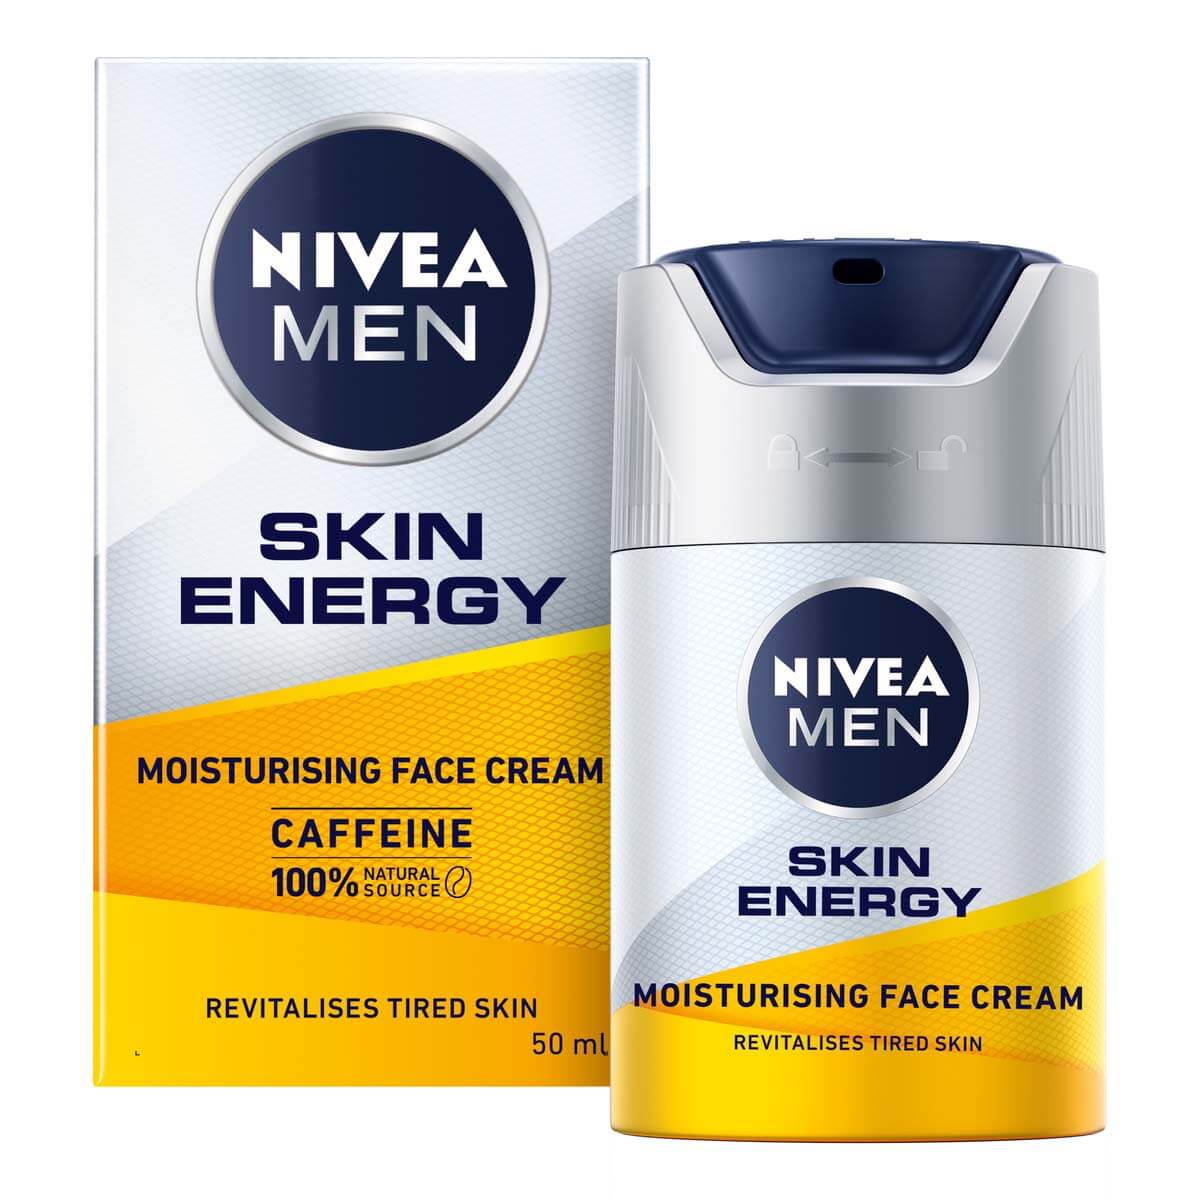 Nivea Men Skin Energy Face Cream Moisturiser 50M. Skin Health For Men